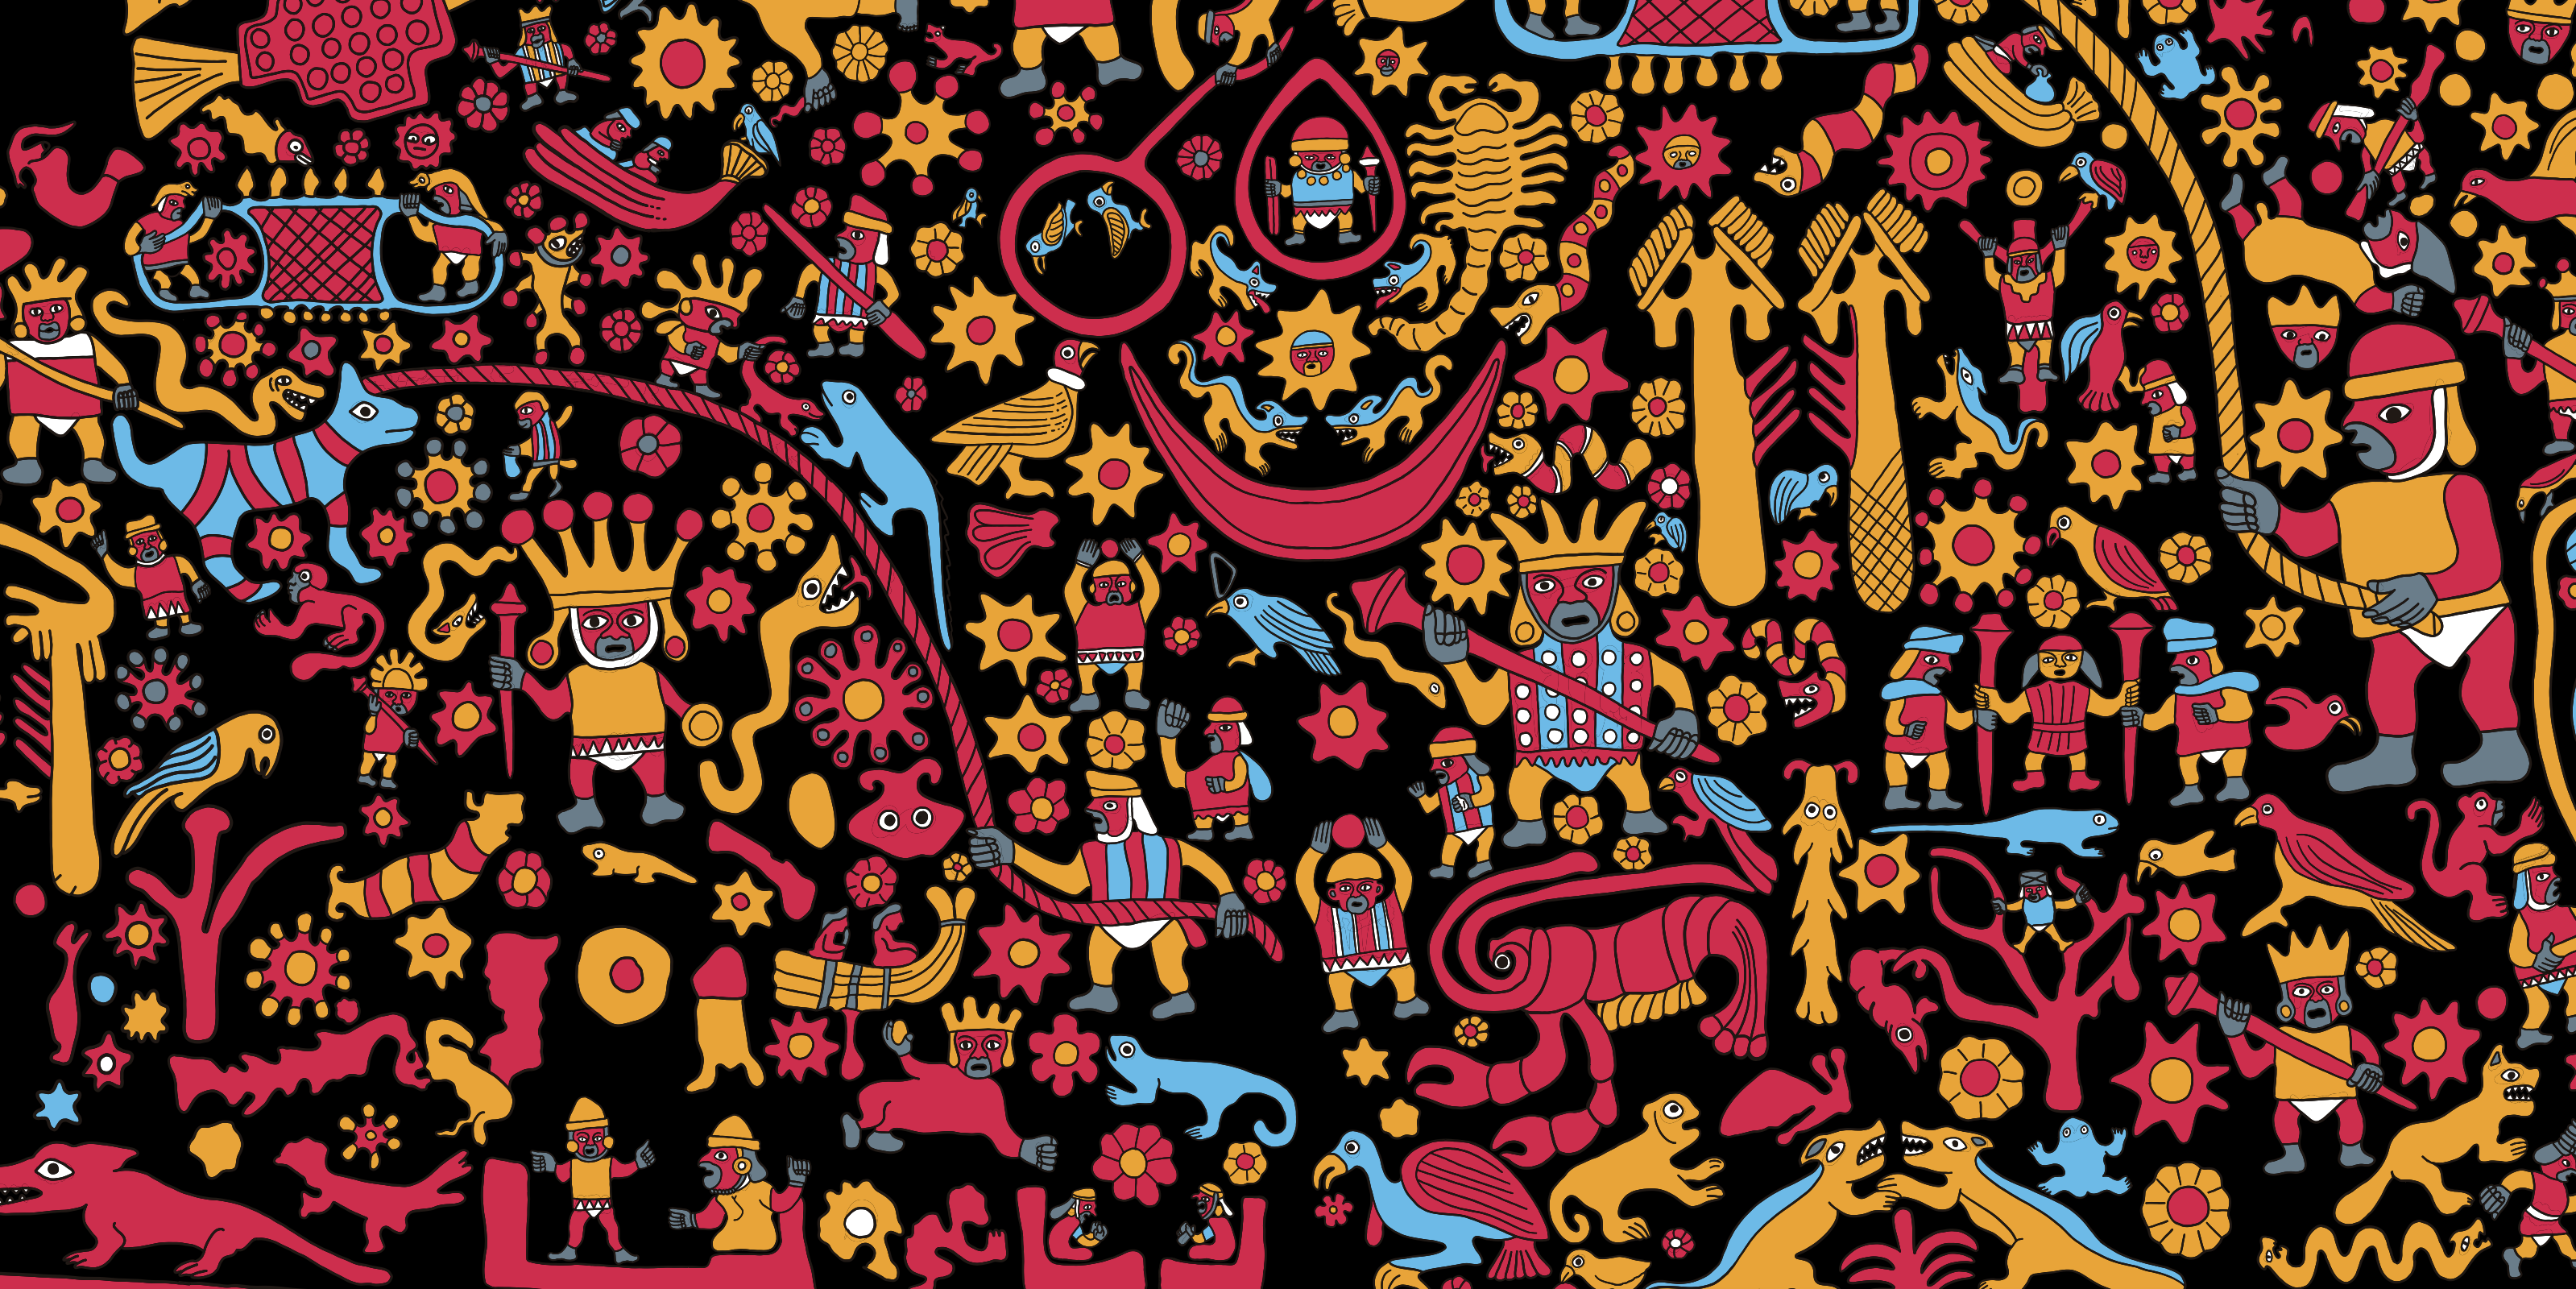 La fiesta de las imágenes en los Andes. Arte mural en la pirámide Huaca de la Luna, cultura Moche, costa centro norte del Perú. Reproducción gráfica del original. Ilustración, Álvaro Arteaga.